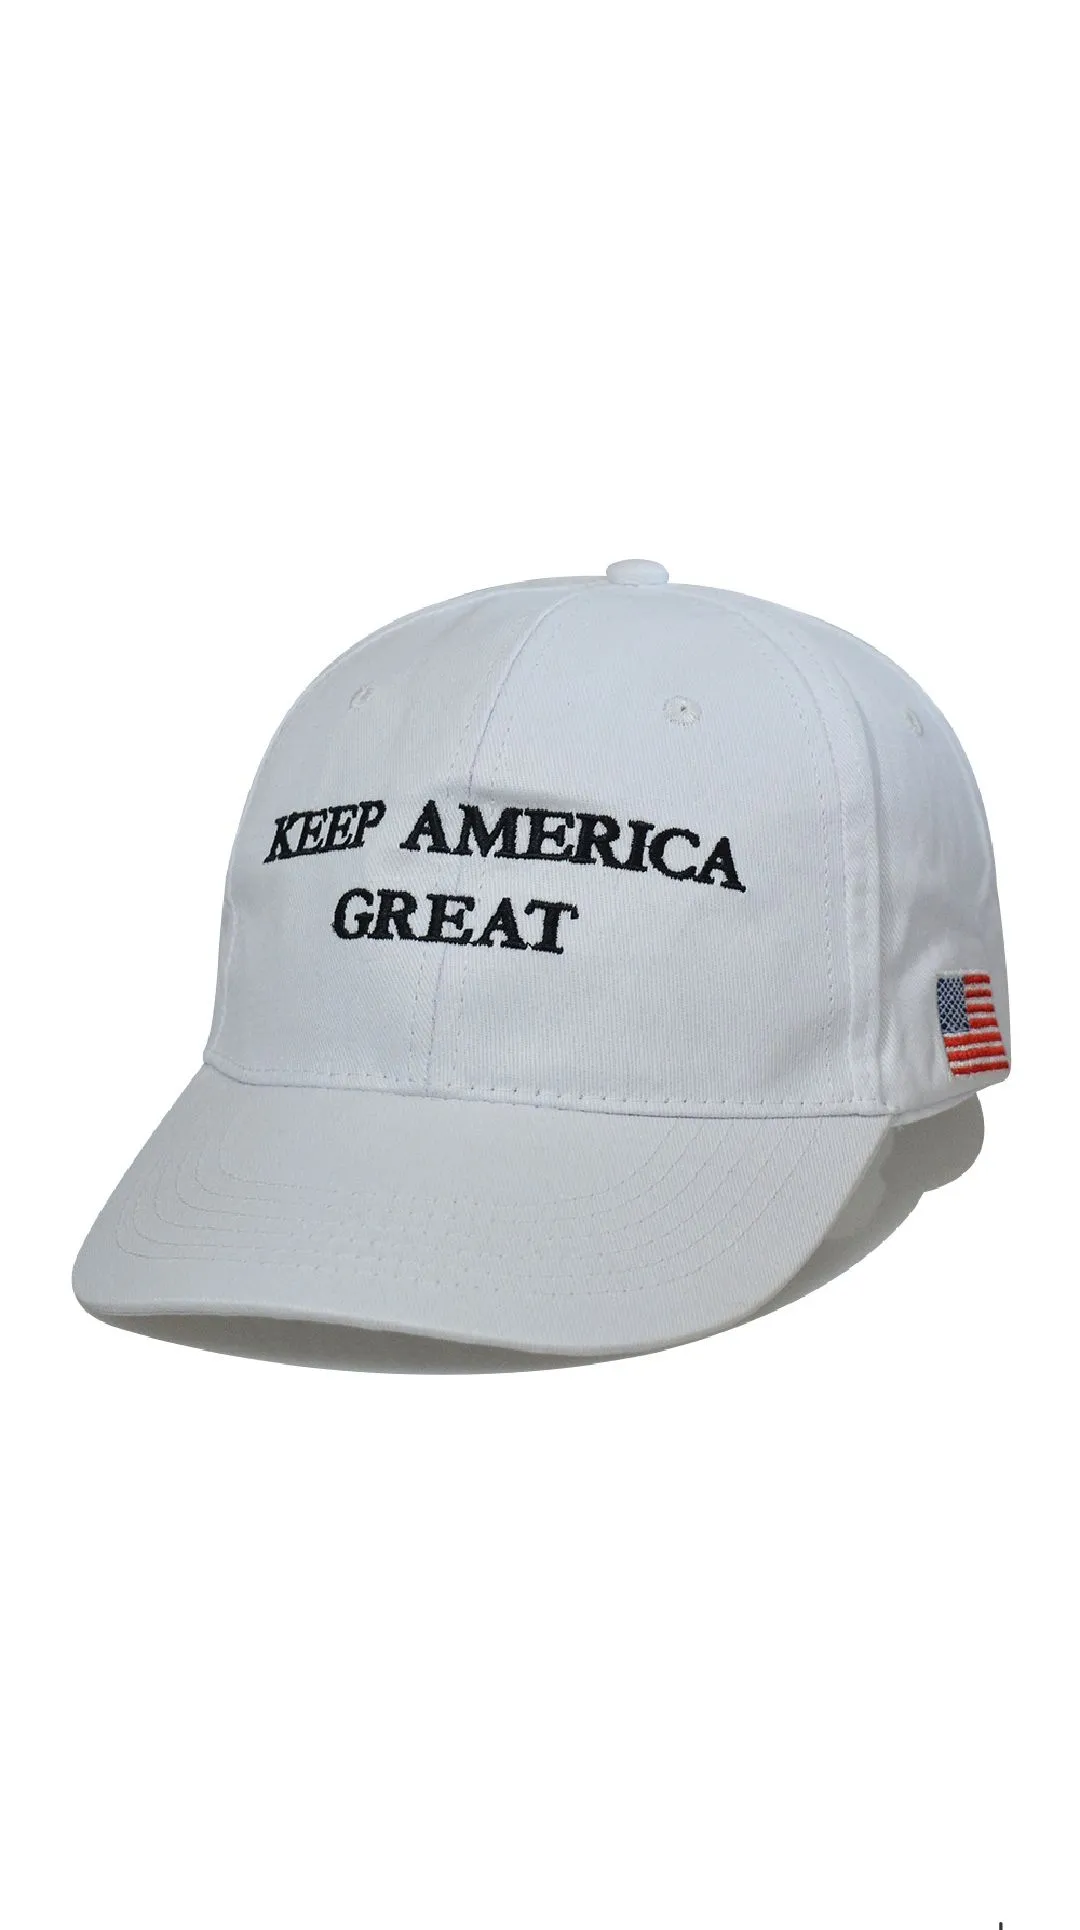 Berretto da baseball delle elezioni americane di Donald Trump 2024 Fai in modo che l'America sia grande di nuovo Cappello Ricamo Cappellini del presidente repubblicano Trump con Ameri8755173